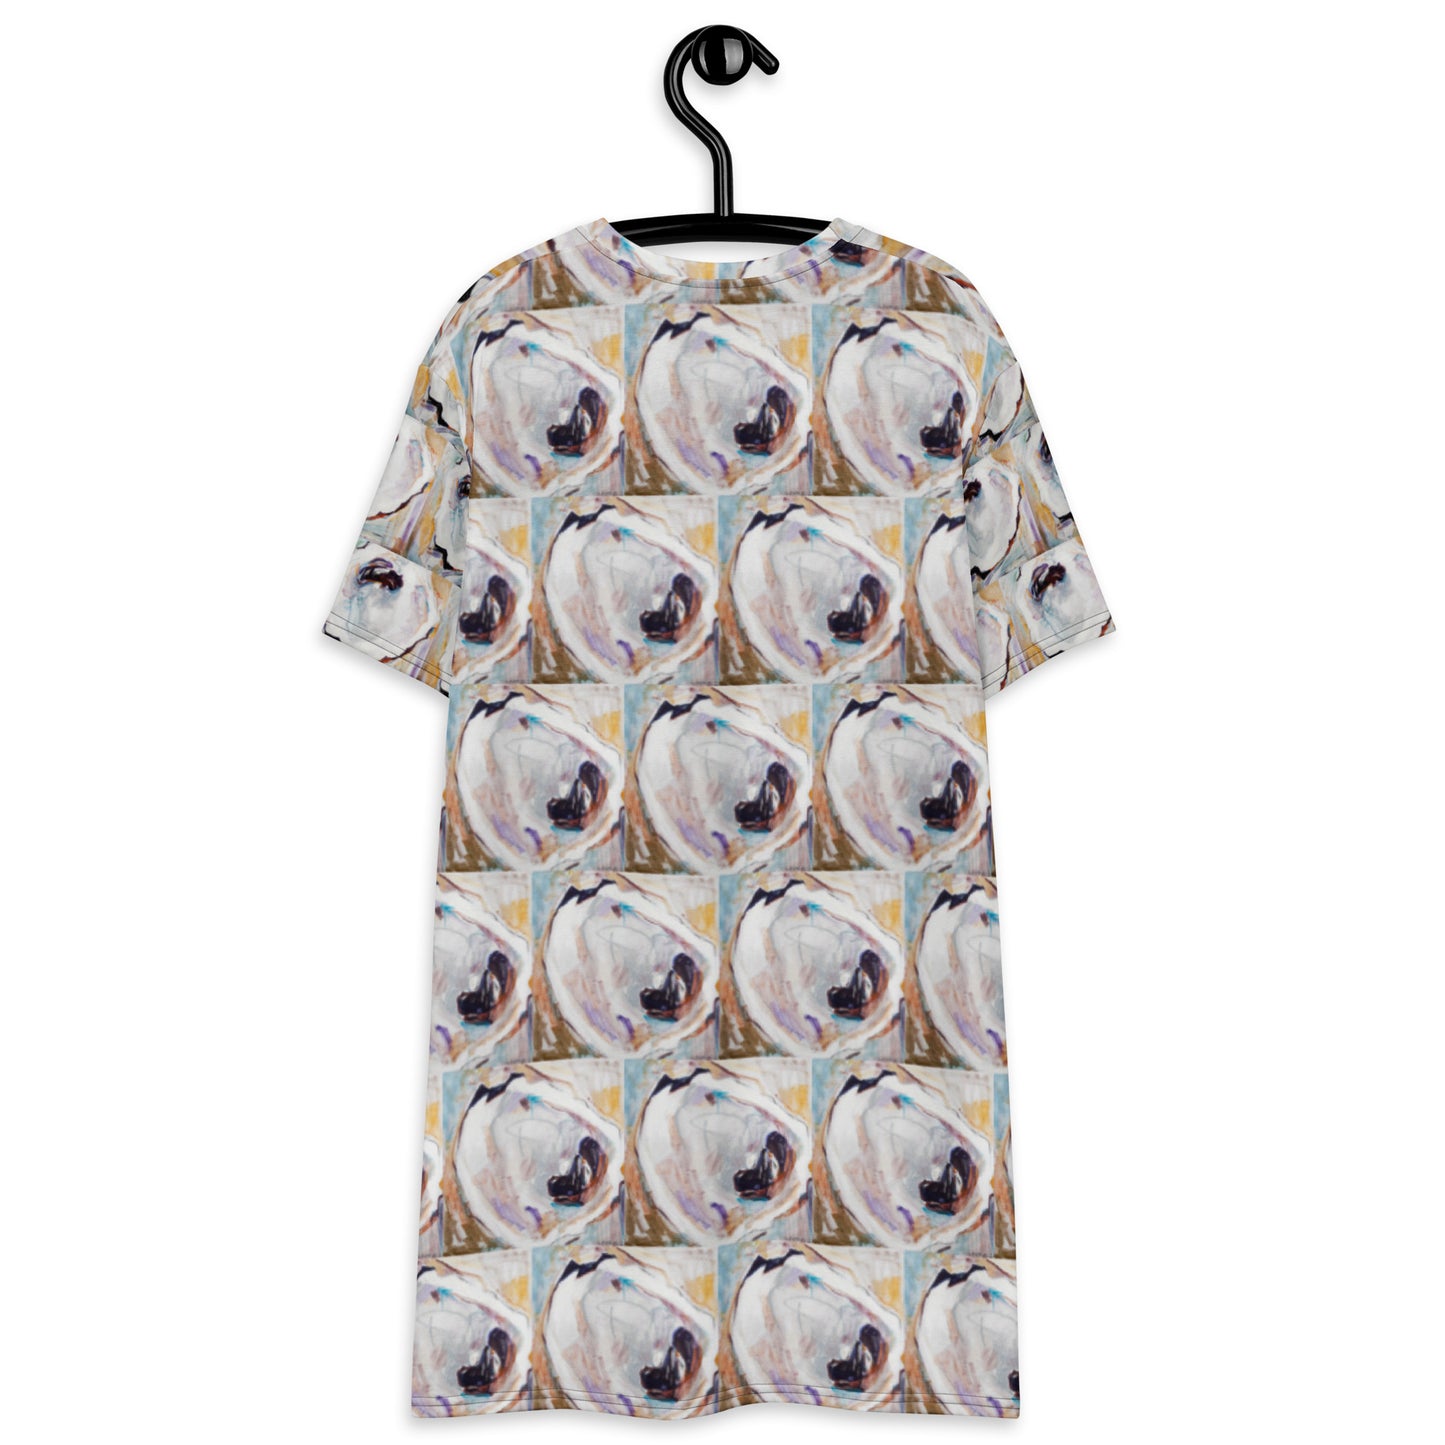 Oyster Shells T-shirt dress